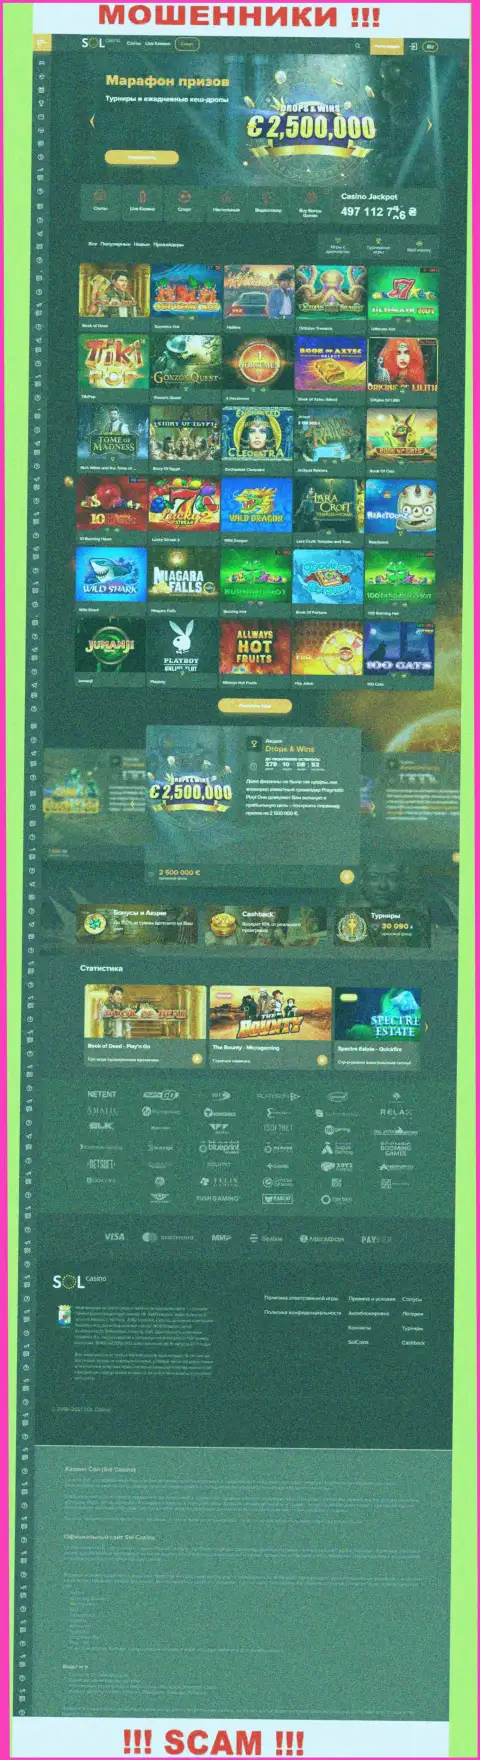 Главная страничка официального интернет-сервиса мошенников Sol Casino